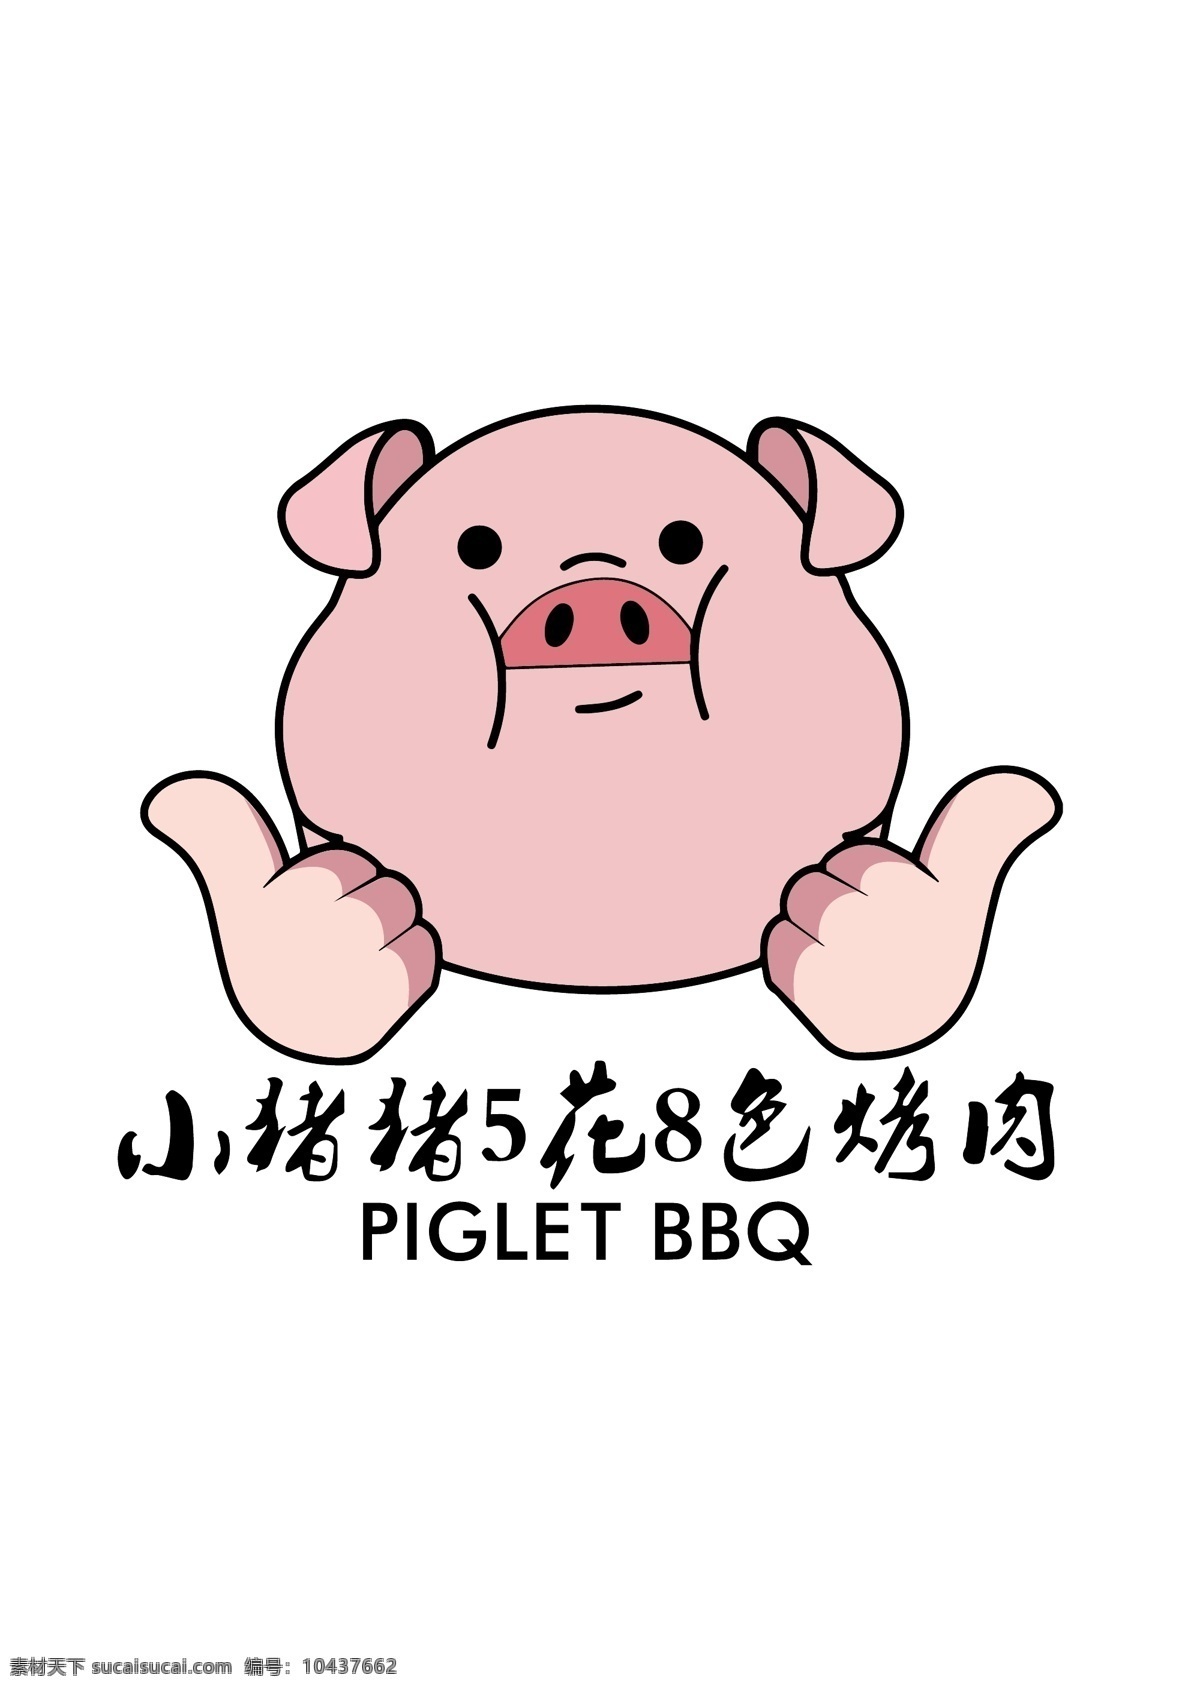 小猪猪烤肉 小猪矢量图 卡通小猪 小猪图案 烤肉标志 logo设计 标志图标 其他图标